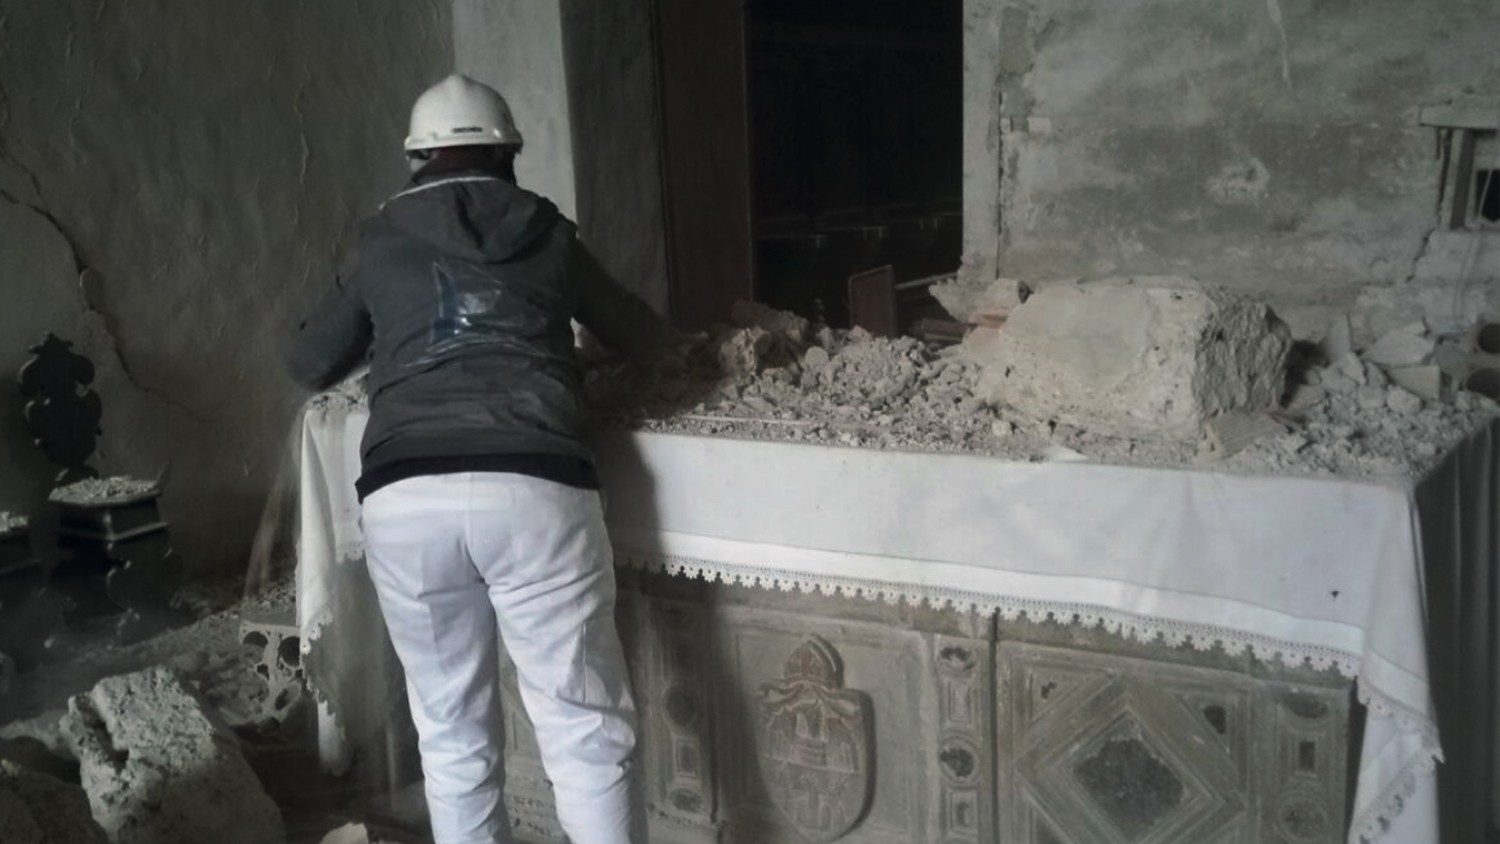 梵蒂冈博物馆展出从地震瓦砾中重生的十字架 - 梵蒂冈新闻网